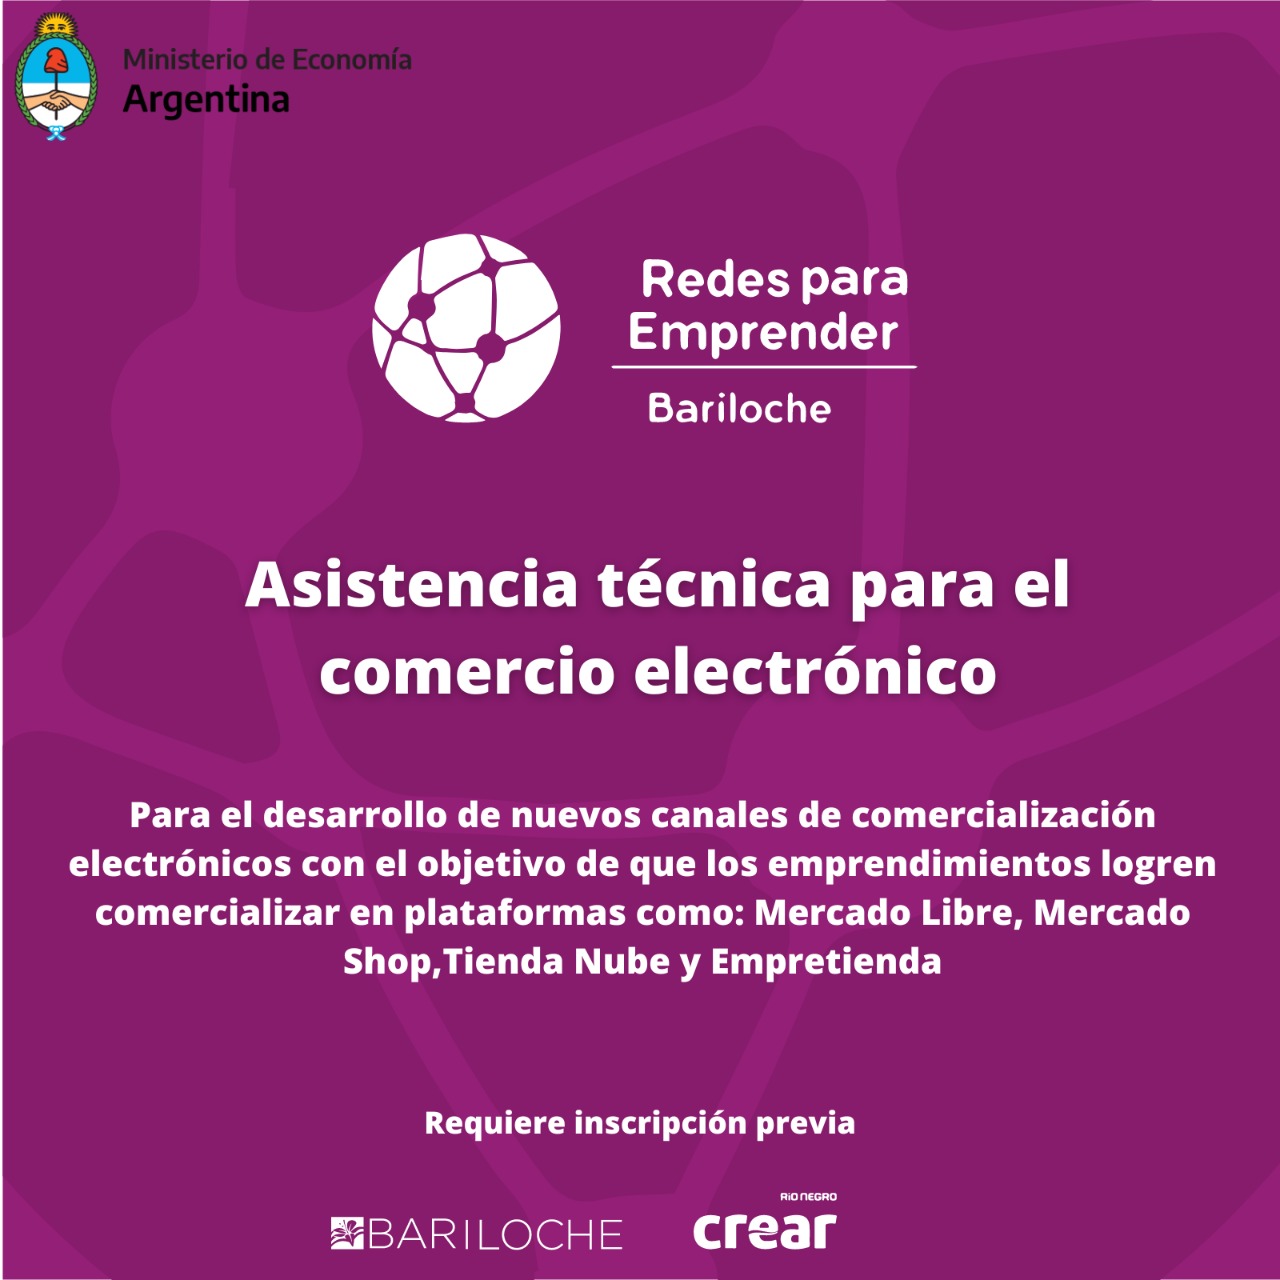 Invitan a participar de la actividad de asistencia técnica para el comercio electrónico – Redes para Emprender Bariloche